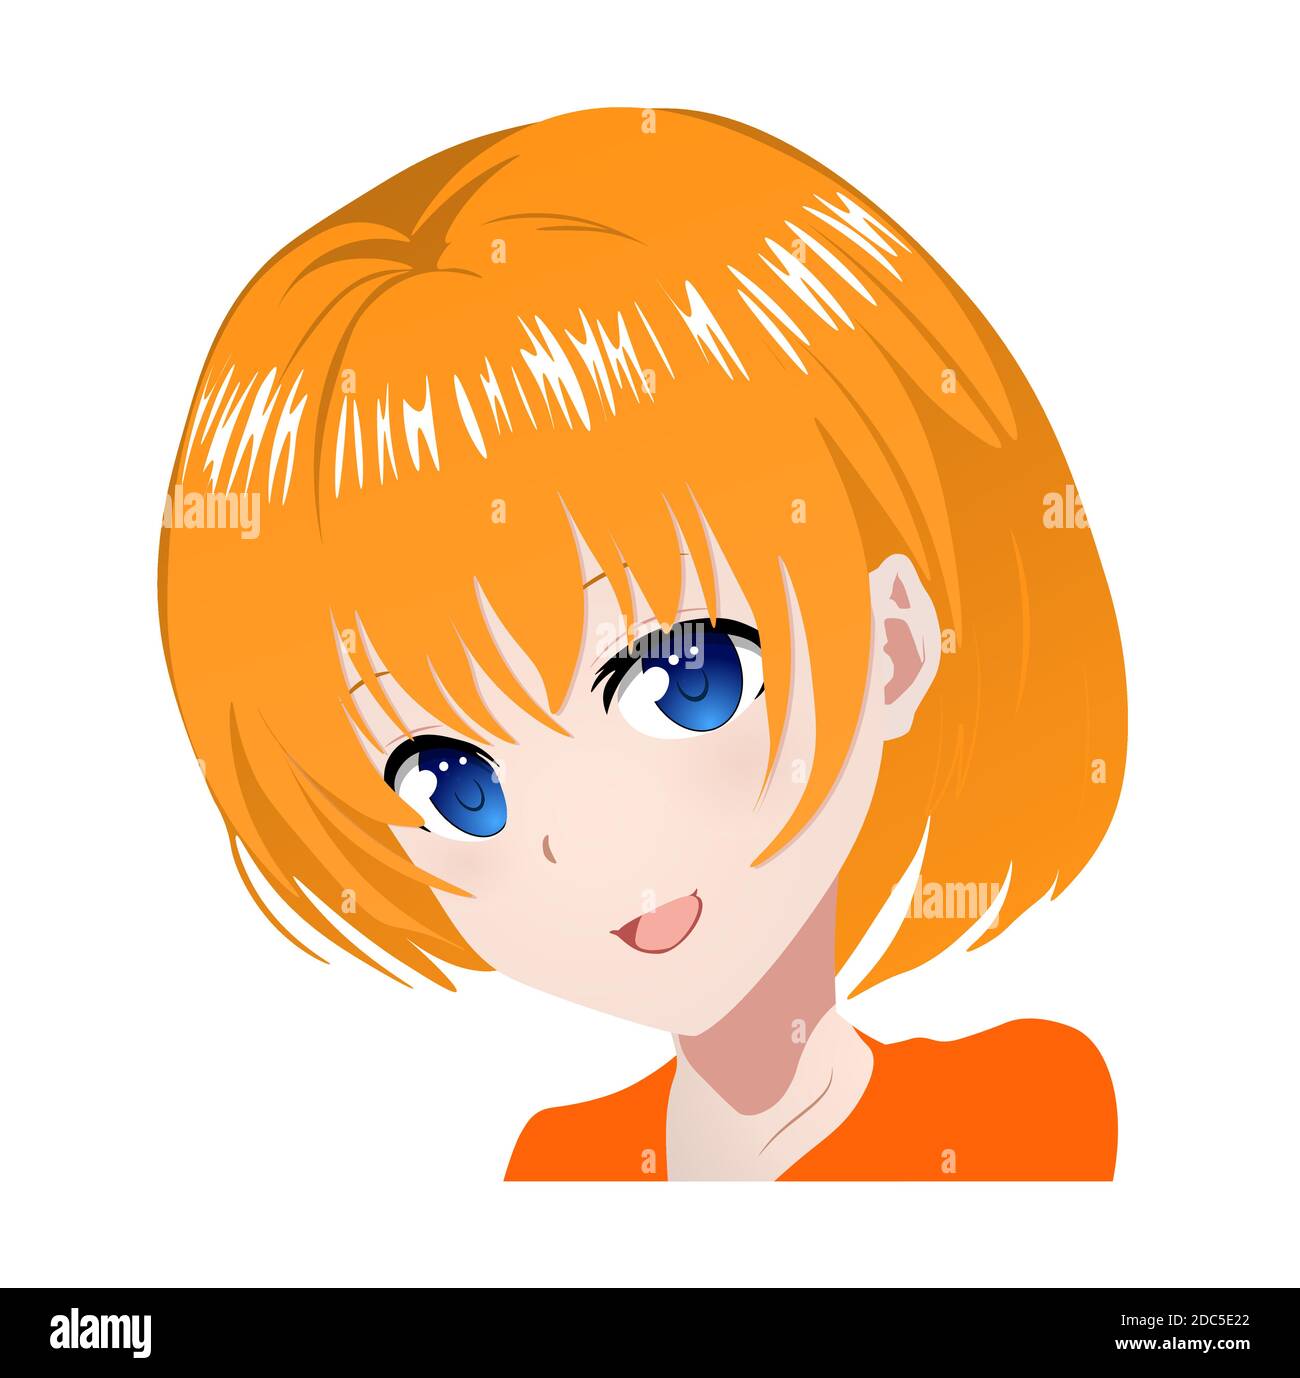 Anime Girl Bob Haircut Bangs Scarf: Vector có sẵn (miễn phí bản quyền)  1559072594 | Shutterstock